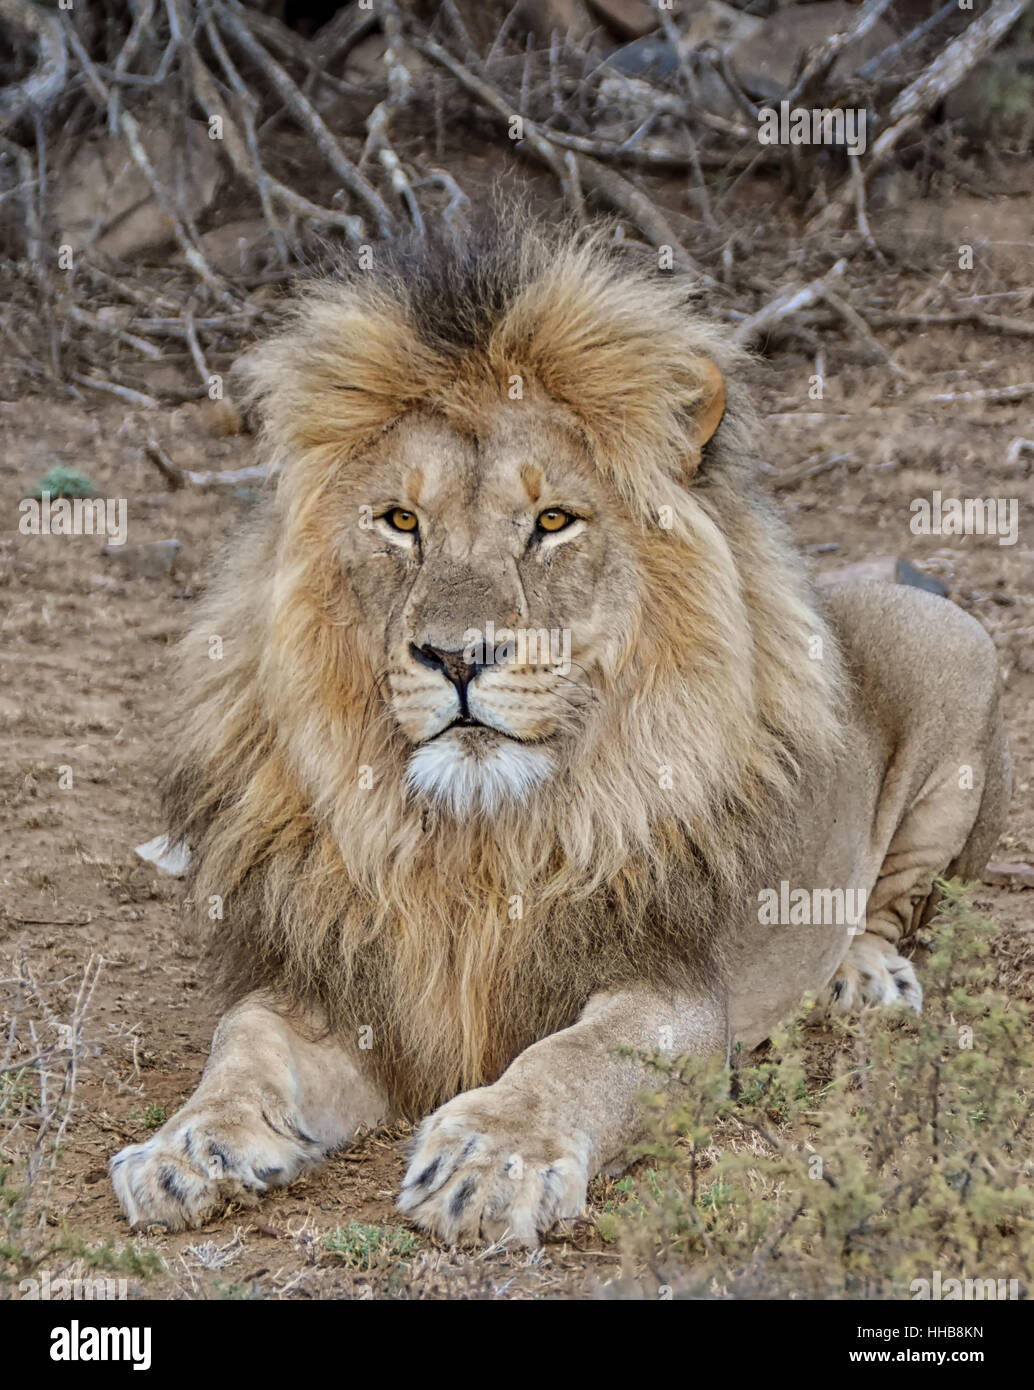 Leone maschio nel sud della savana africana Foto Stock